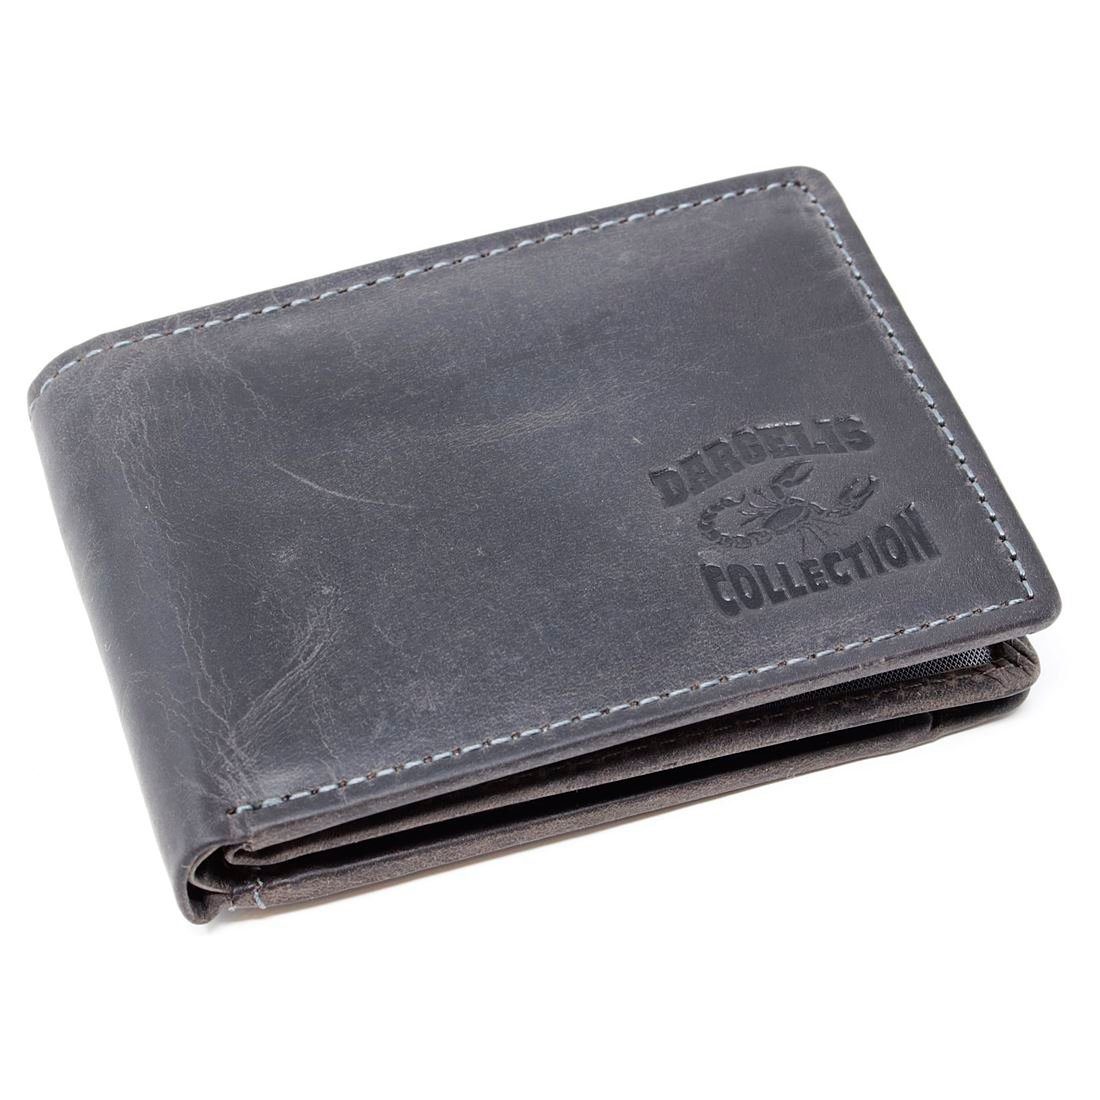 Herren mit RFID SHG Brieftasche Portemonnaie, Schutz Münzfach Geldbörse Männerbörse Lederbörse Börse Leder